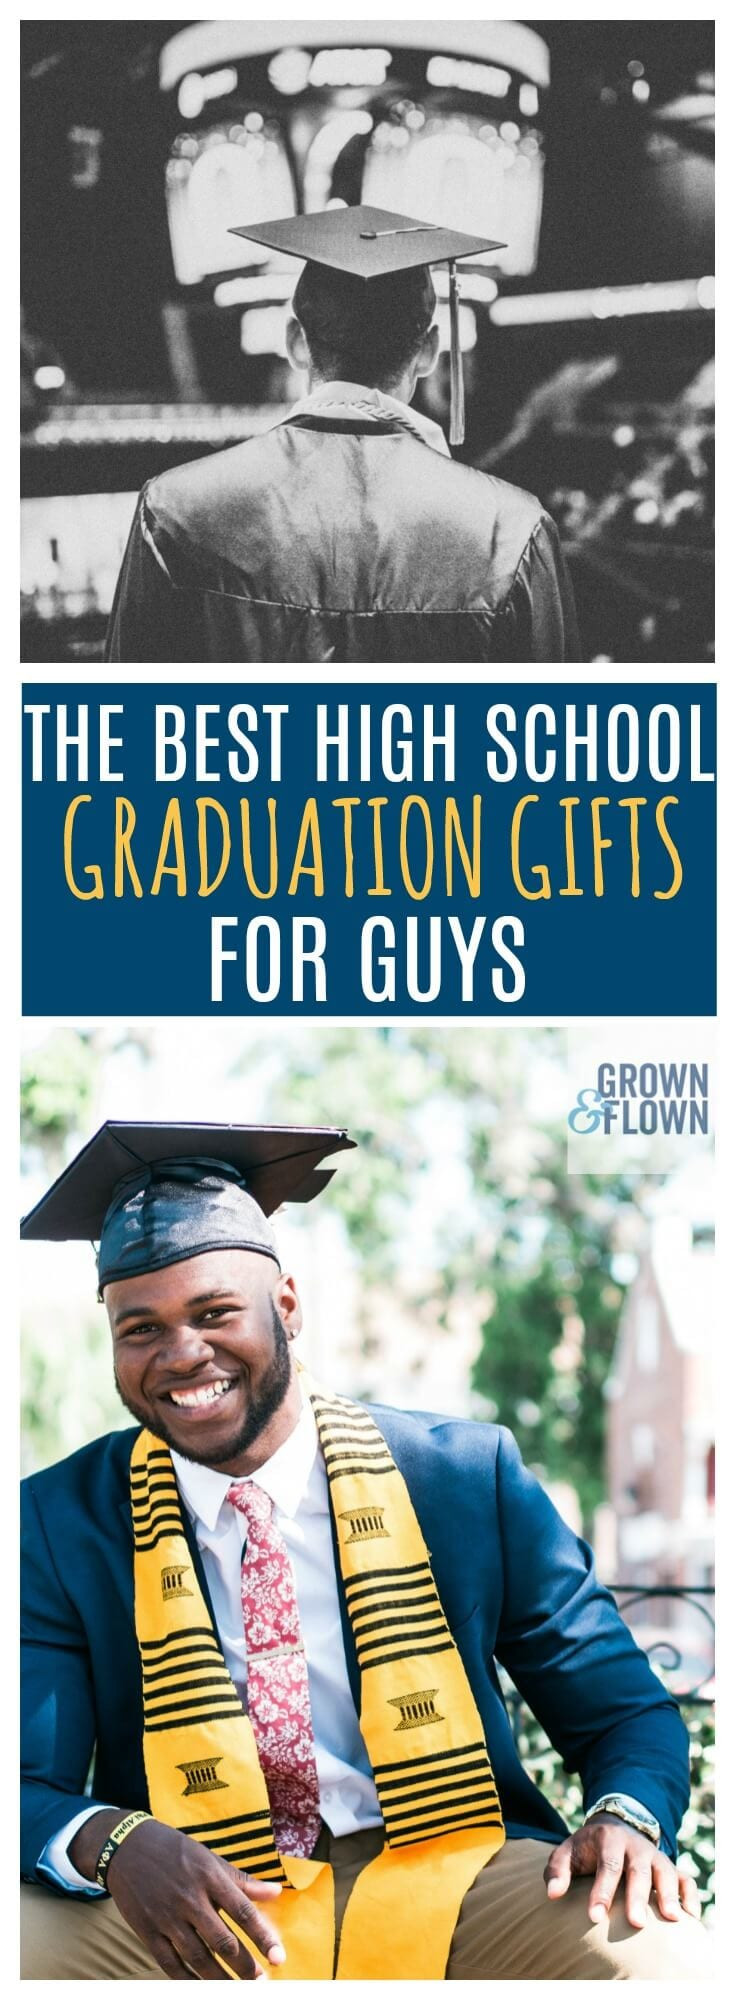 Best High School Graduation Gift Ideas
 2020 High School Graduation Gifts for Guys They Will Love